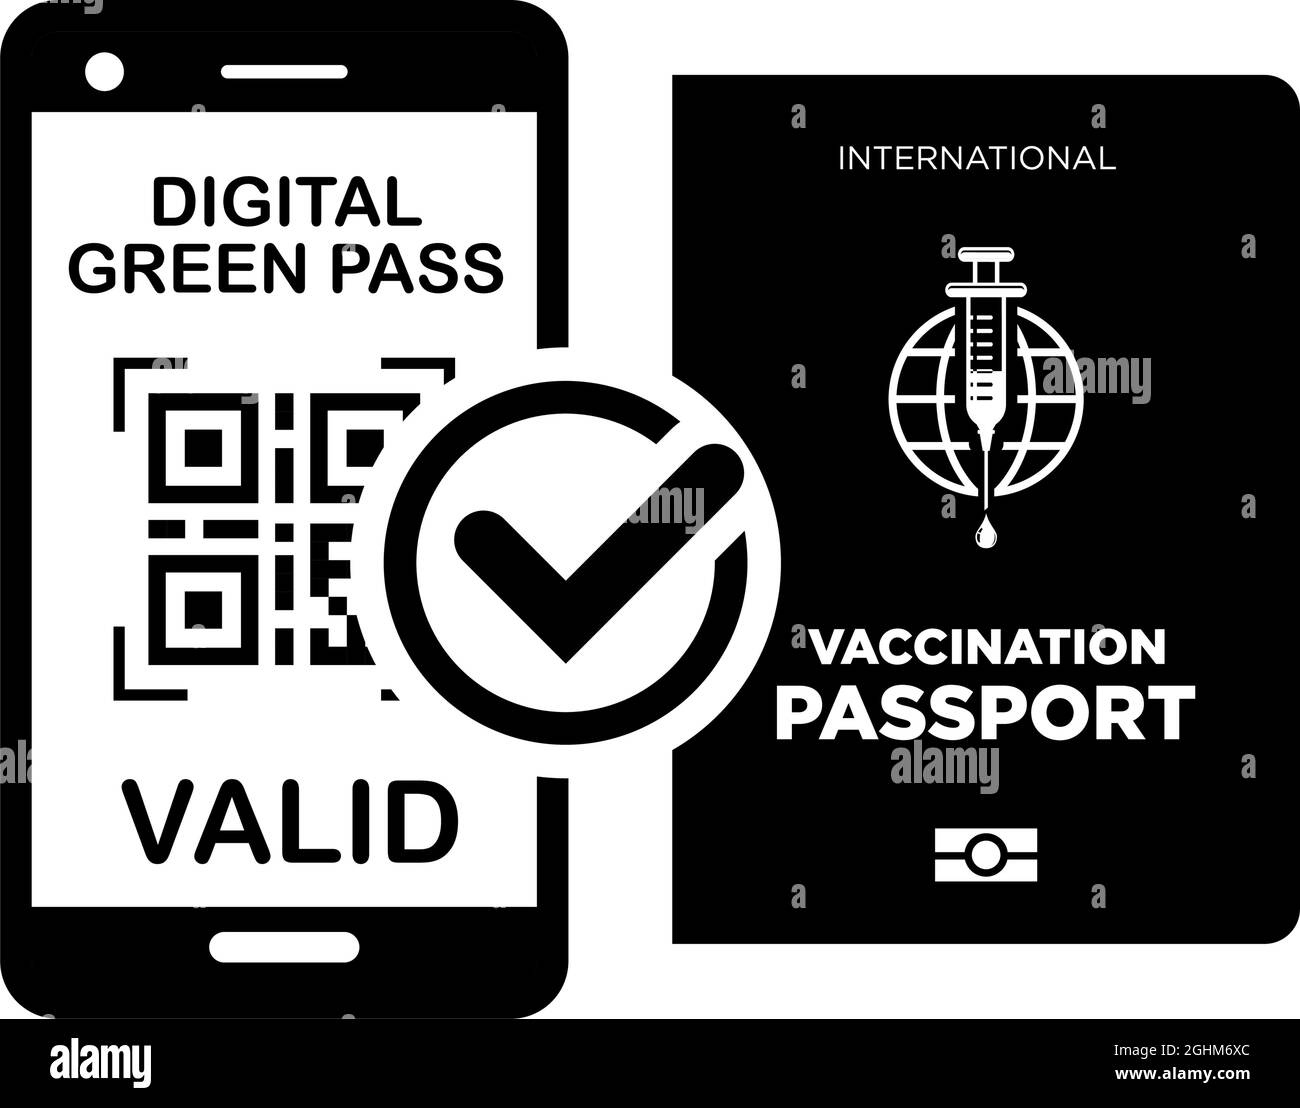 Passeport international de vaccination et passe numérique vert sur smartphone. Icônes vectorielles sur fond transparent Illustration de Vecteur